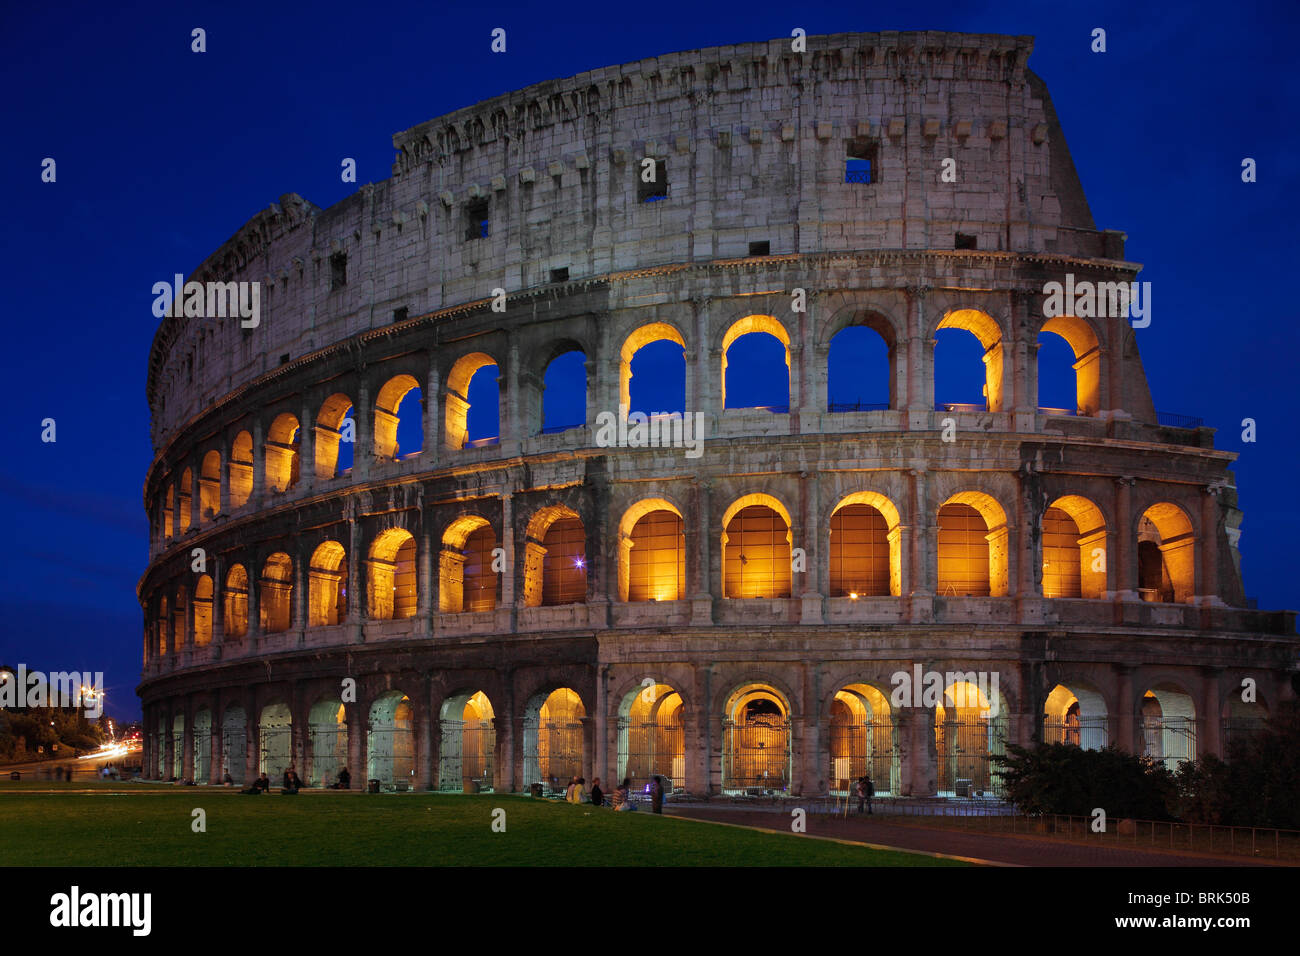 Il Colosseo o il Colosseo a Roma, in Italia è illuminata di notte Foto Stock